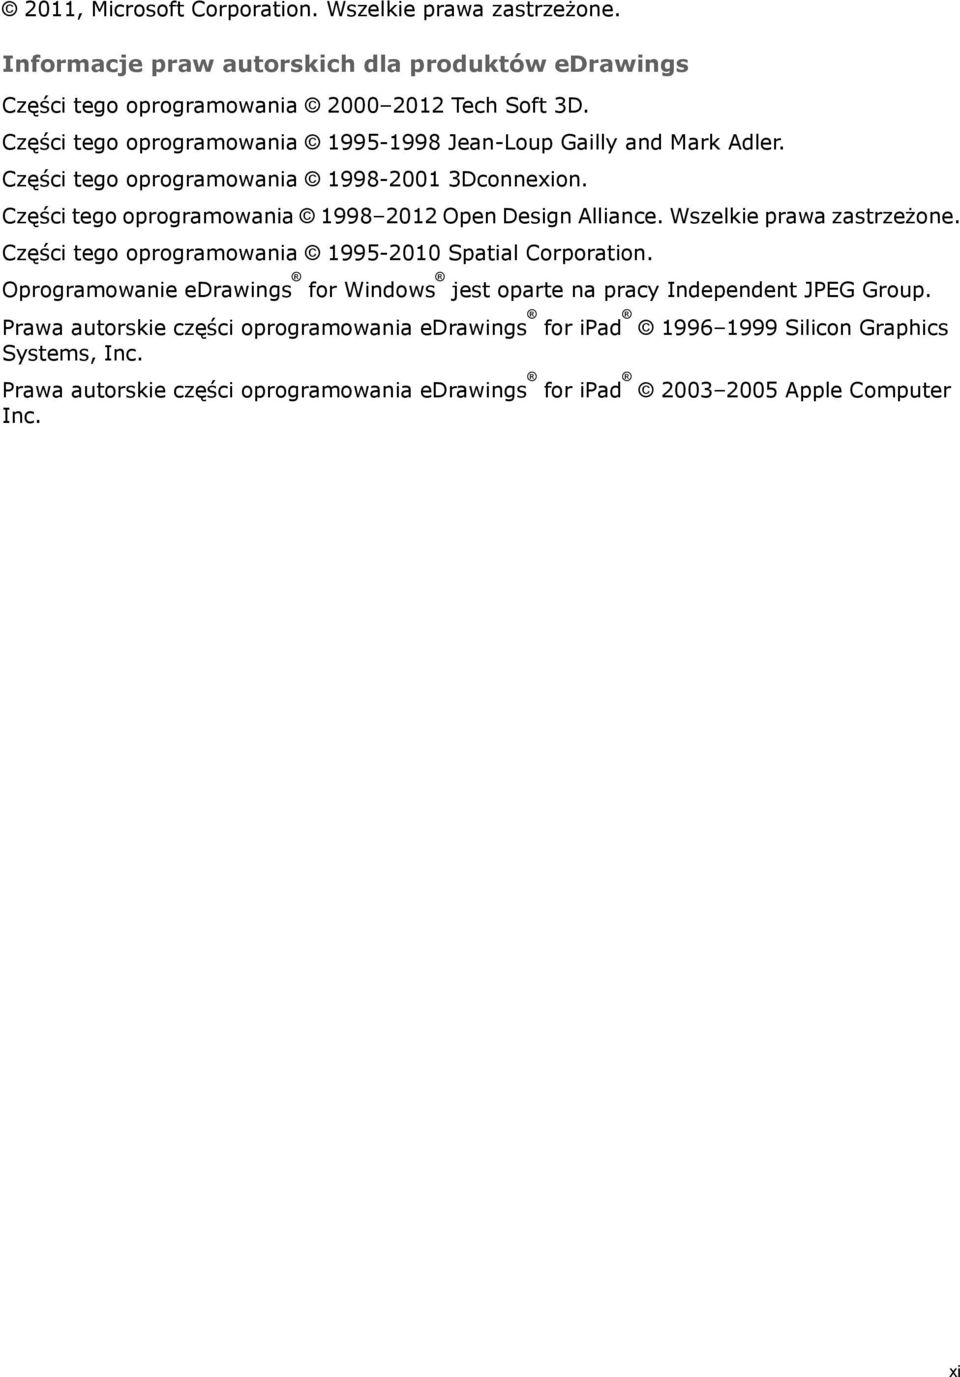 Części tego oprogramowania 1998 2012 Open Design Alliance. Wszelkie prawa zastrzeżone. Części tego oprogramowania 1995-2010 Spatial Corporation.